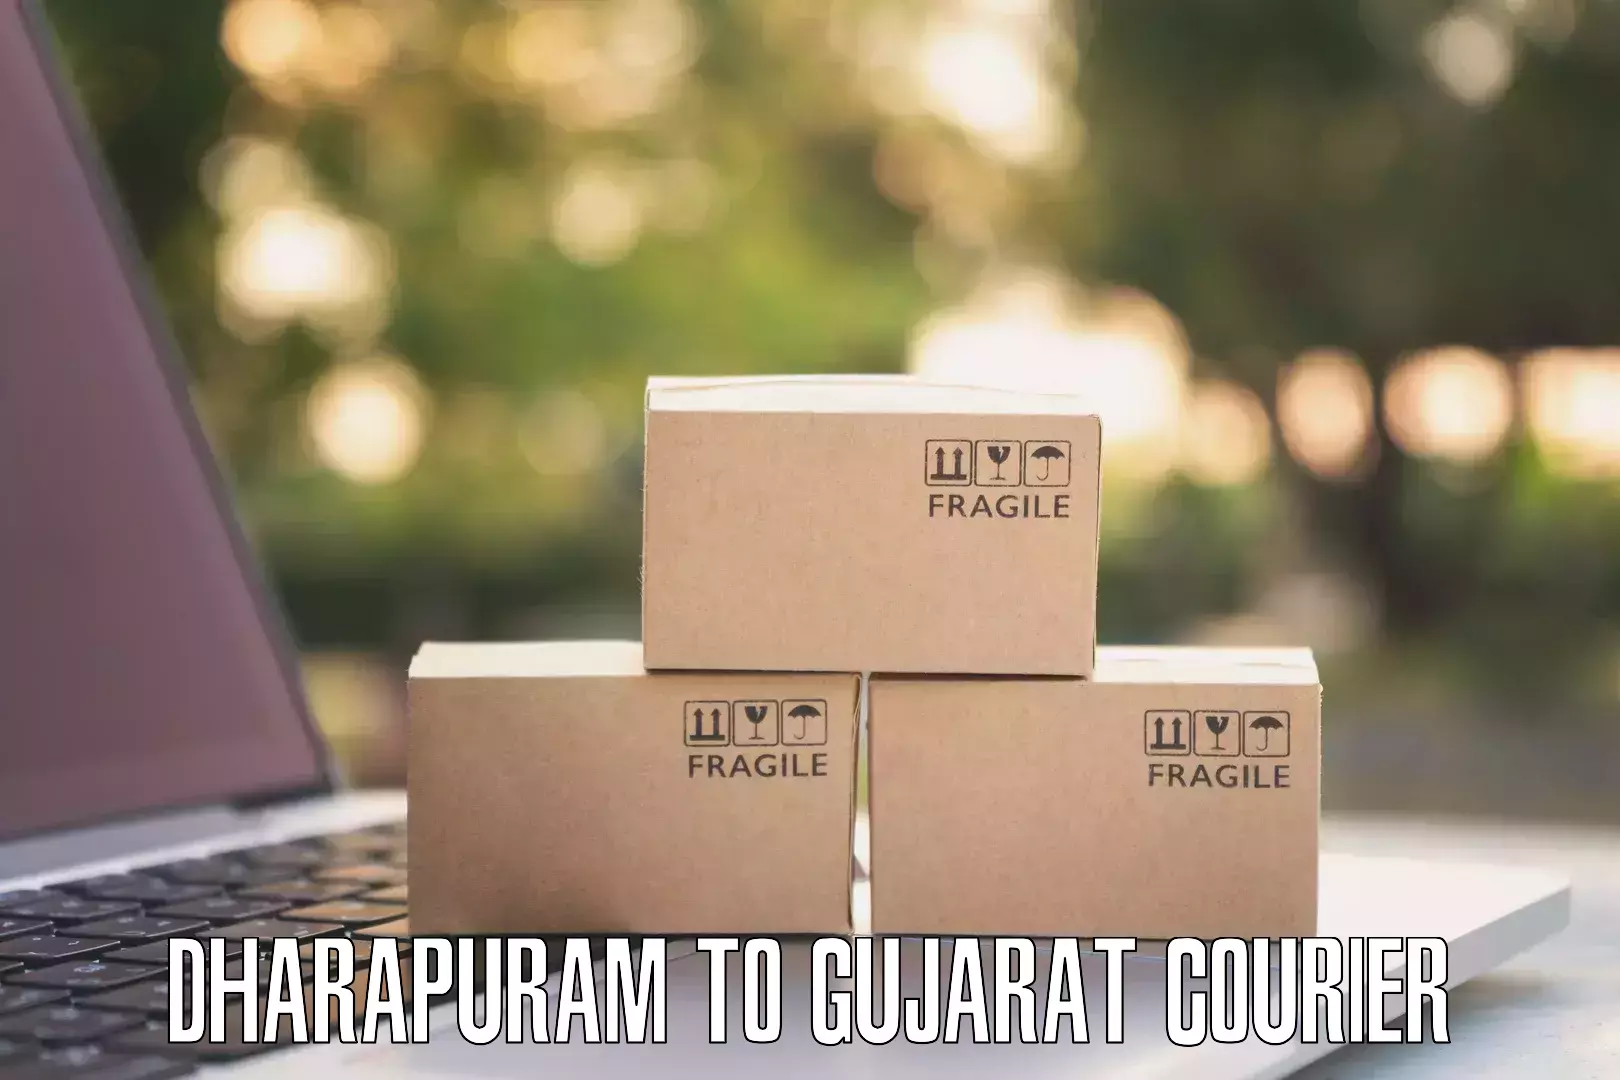 Express package transport Dharapuram to Gujarat